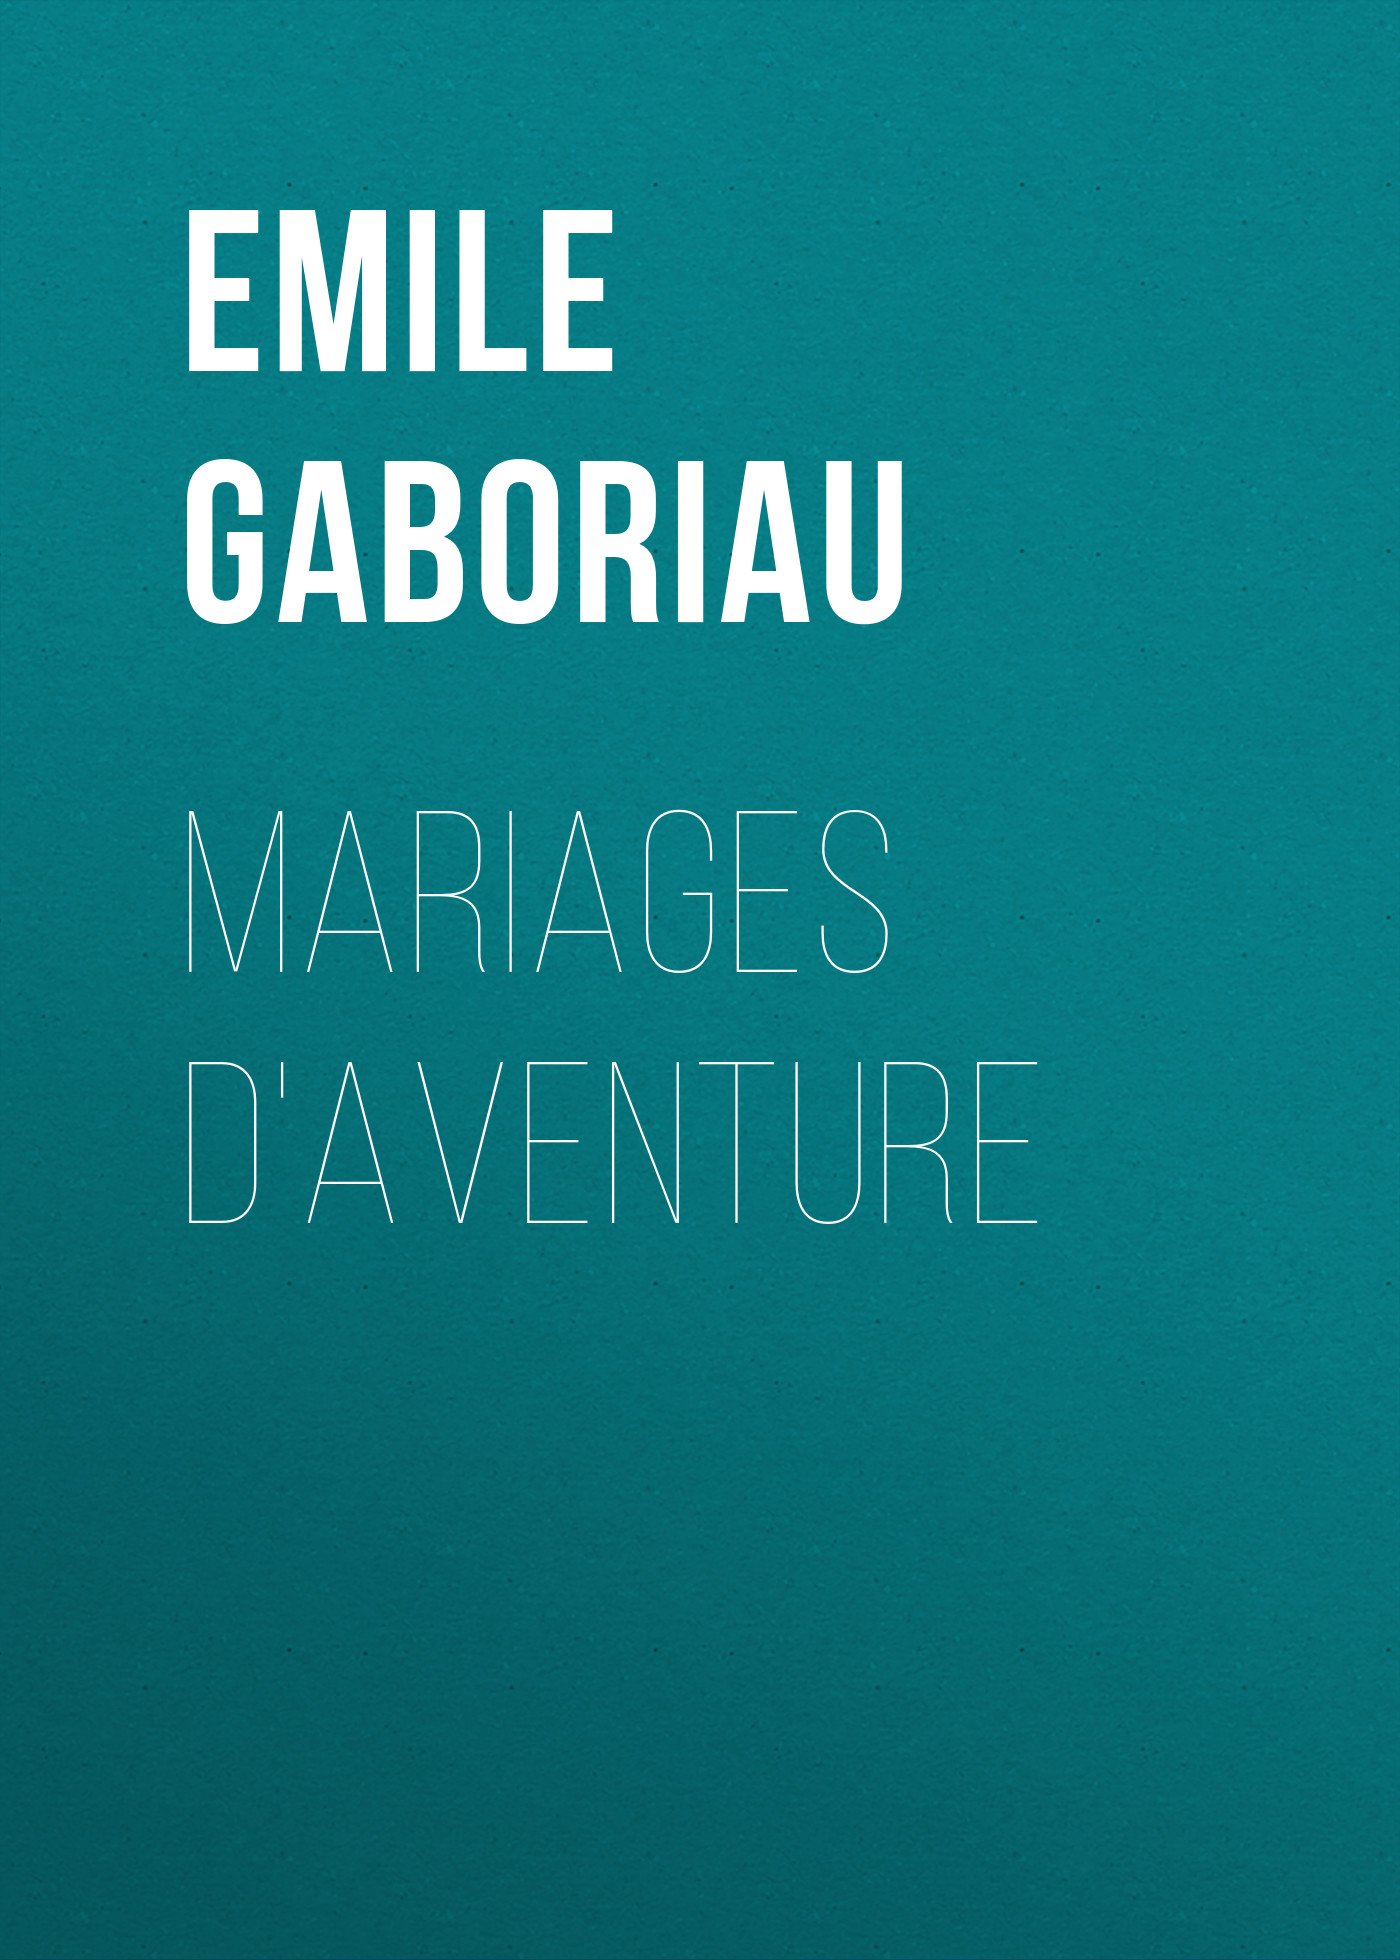 Книга Mariages d'aventure из серии , созданная Emile Gaboriau, может относится к жанру Зарубежная старинная литература, Зарубежная классика. Стоимость электронной книги Mariages d'aventure с идентификатором 24860347 составляет 0 руб.